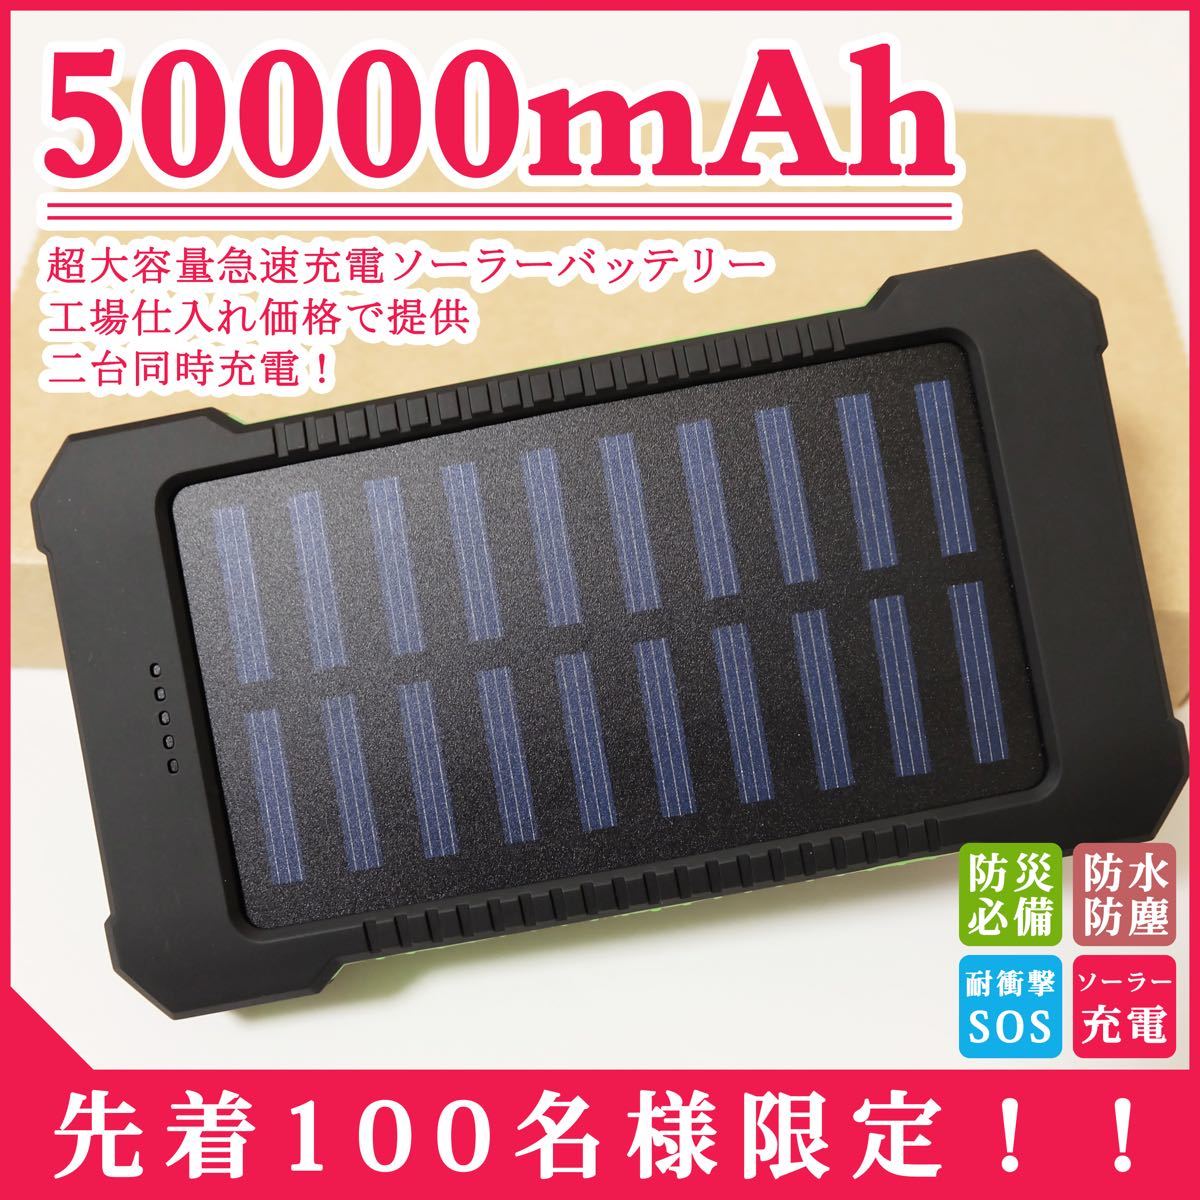 50000mAh 超大容量 スマホ モバイルバッテリー ソーラーチャージャー